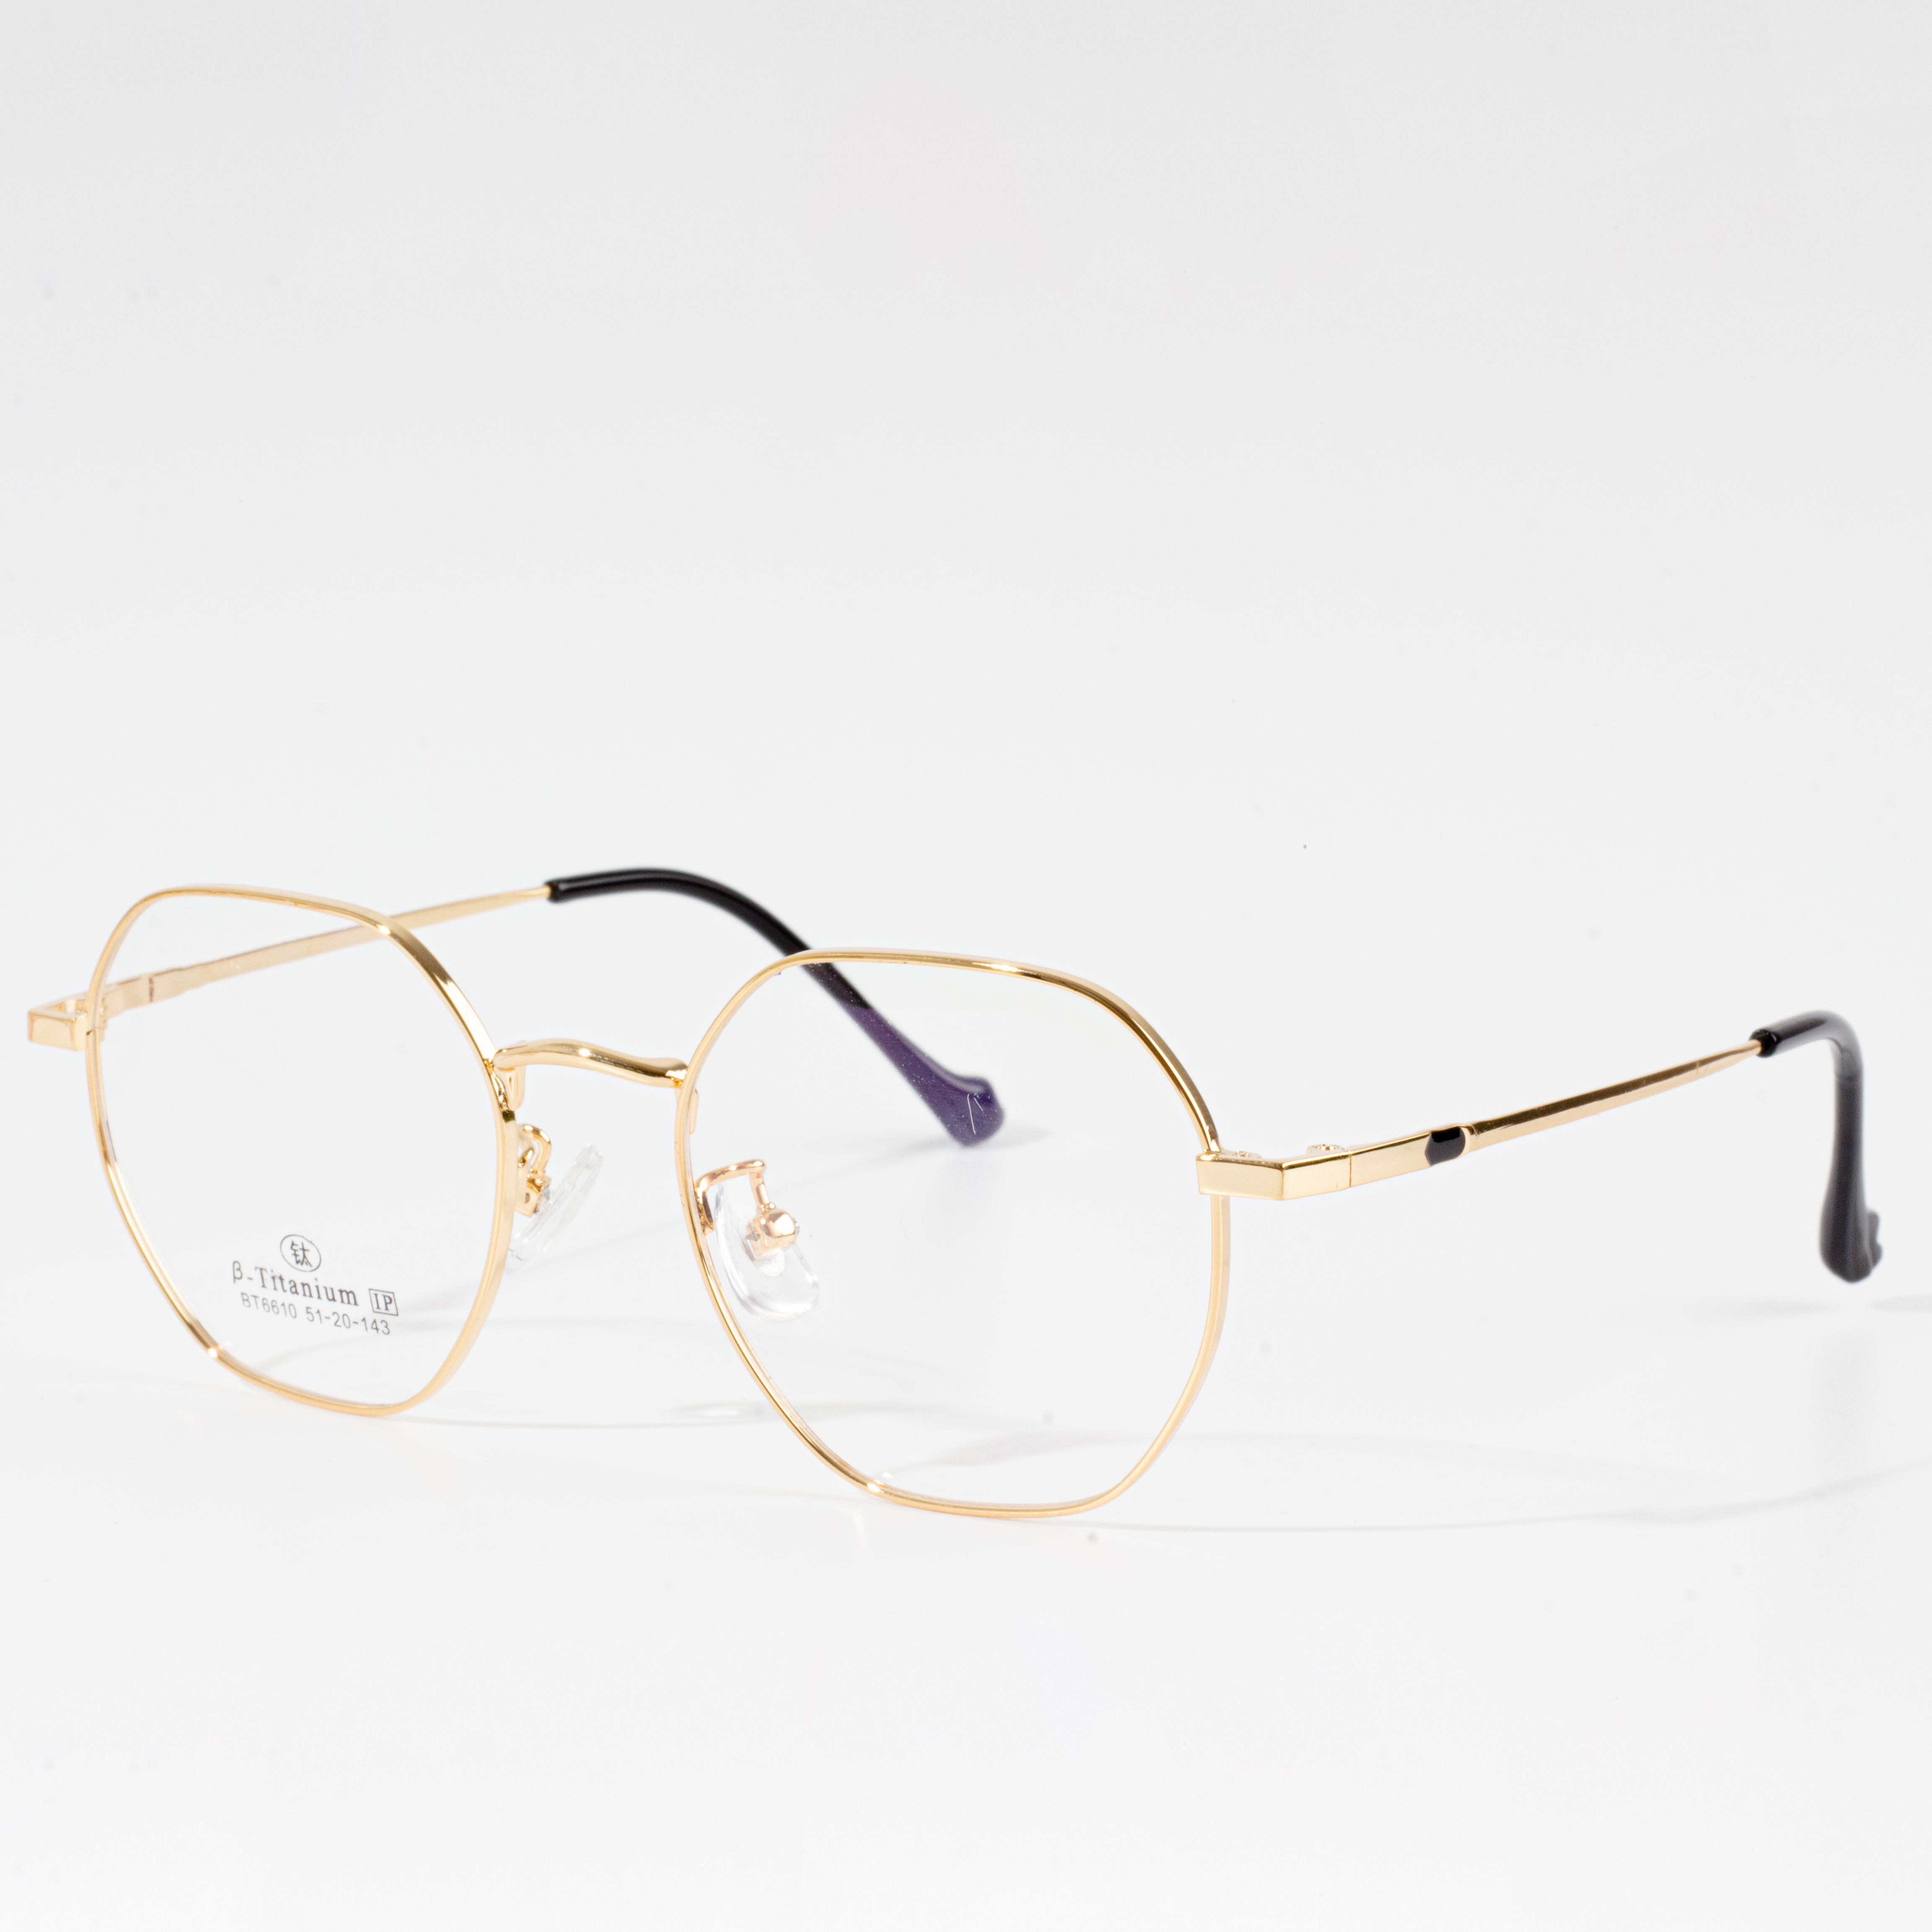 silmälasit vaihdettavissa olevilla kehyksillä